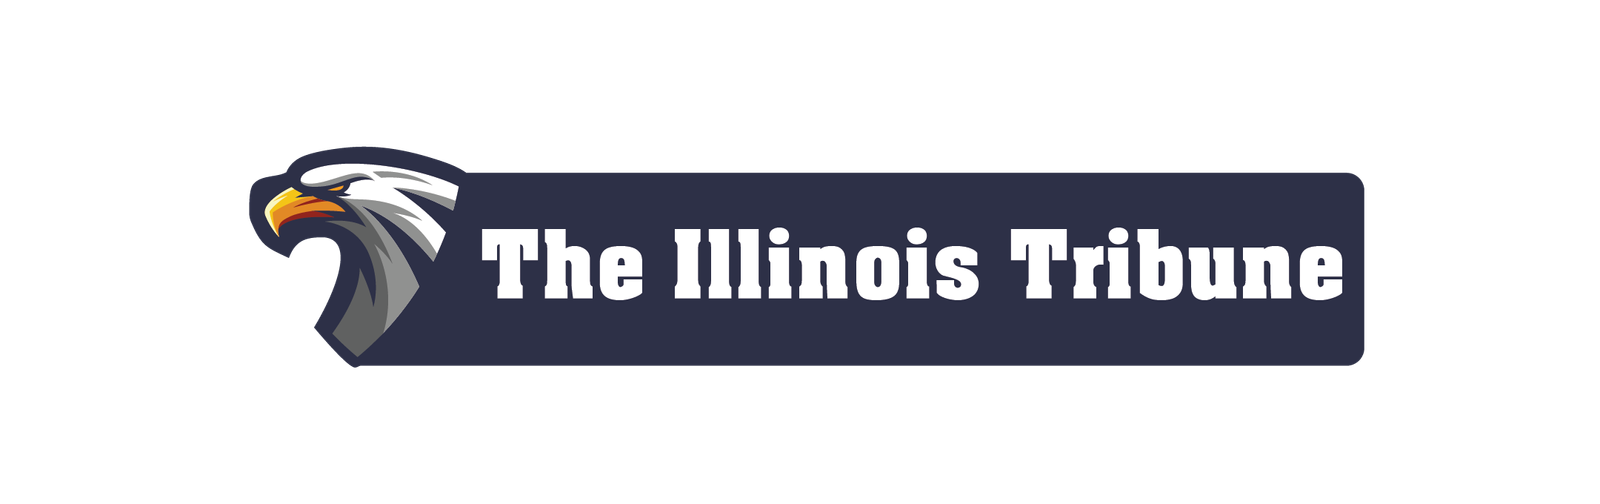 The Illinois Tribune